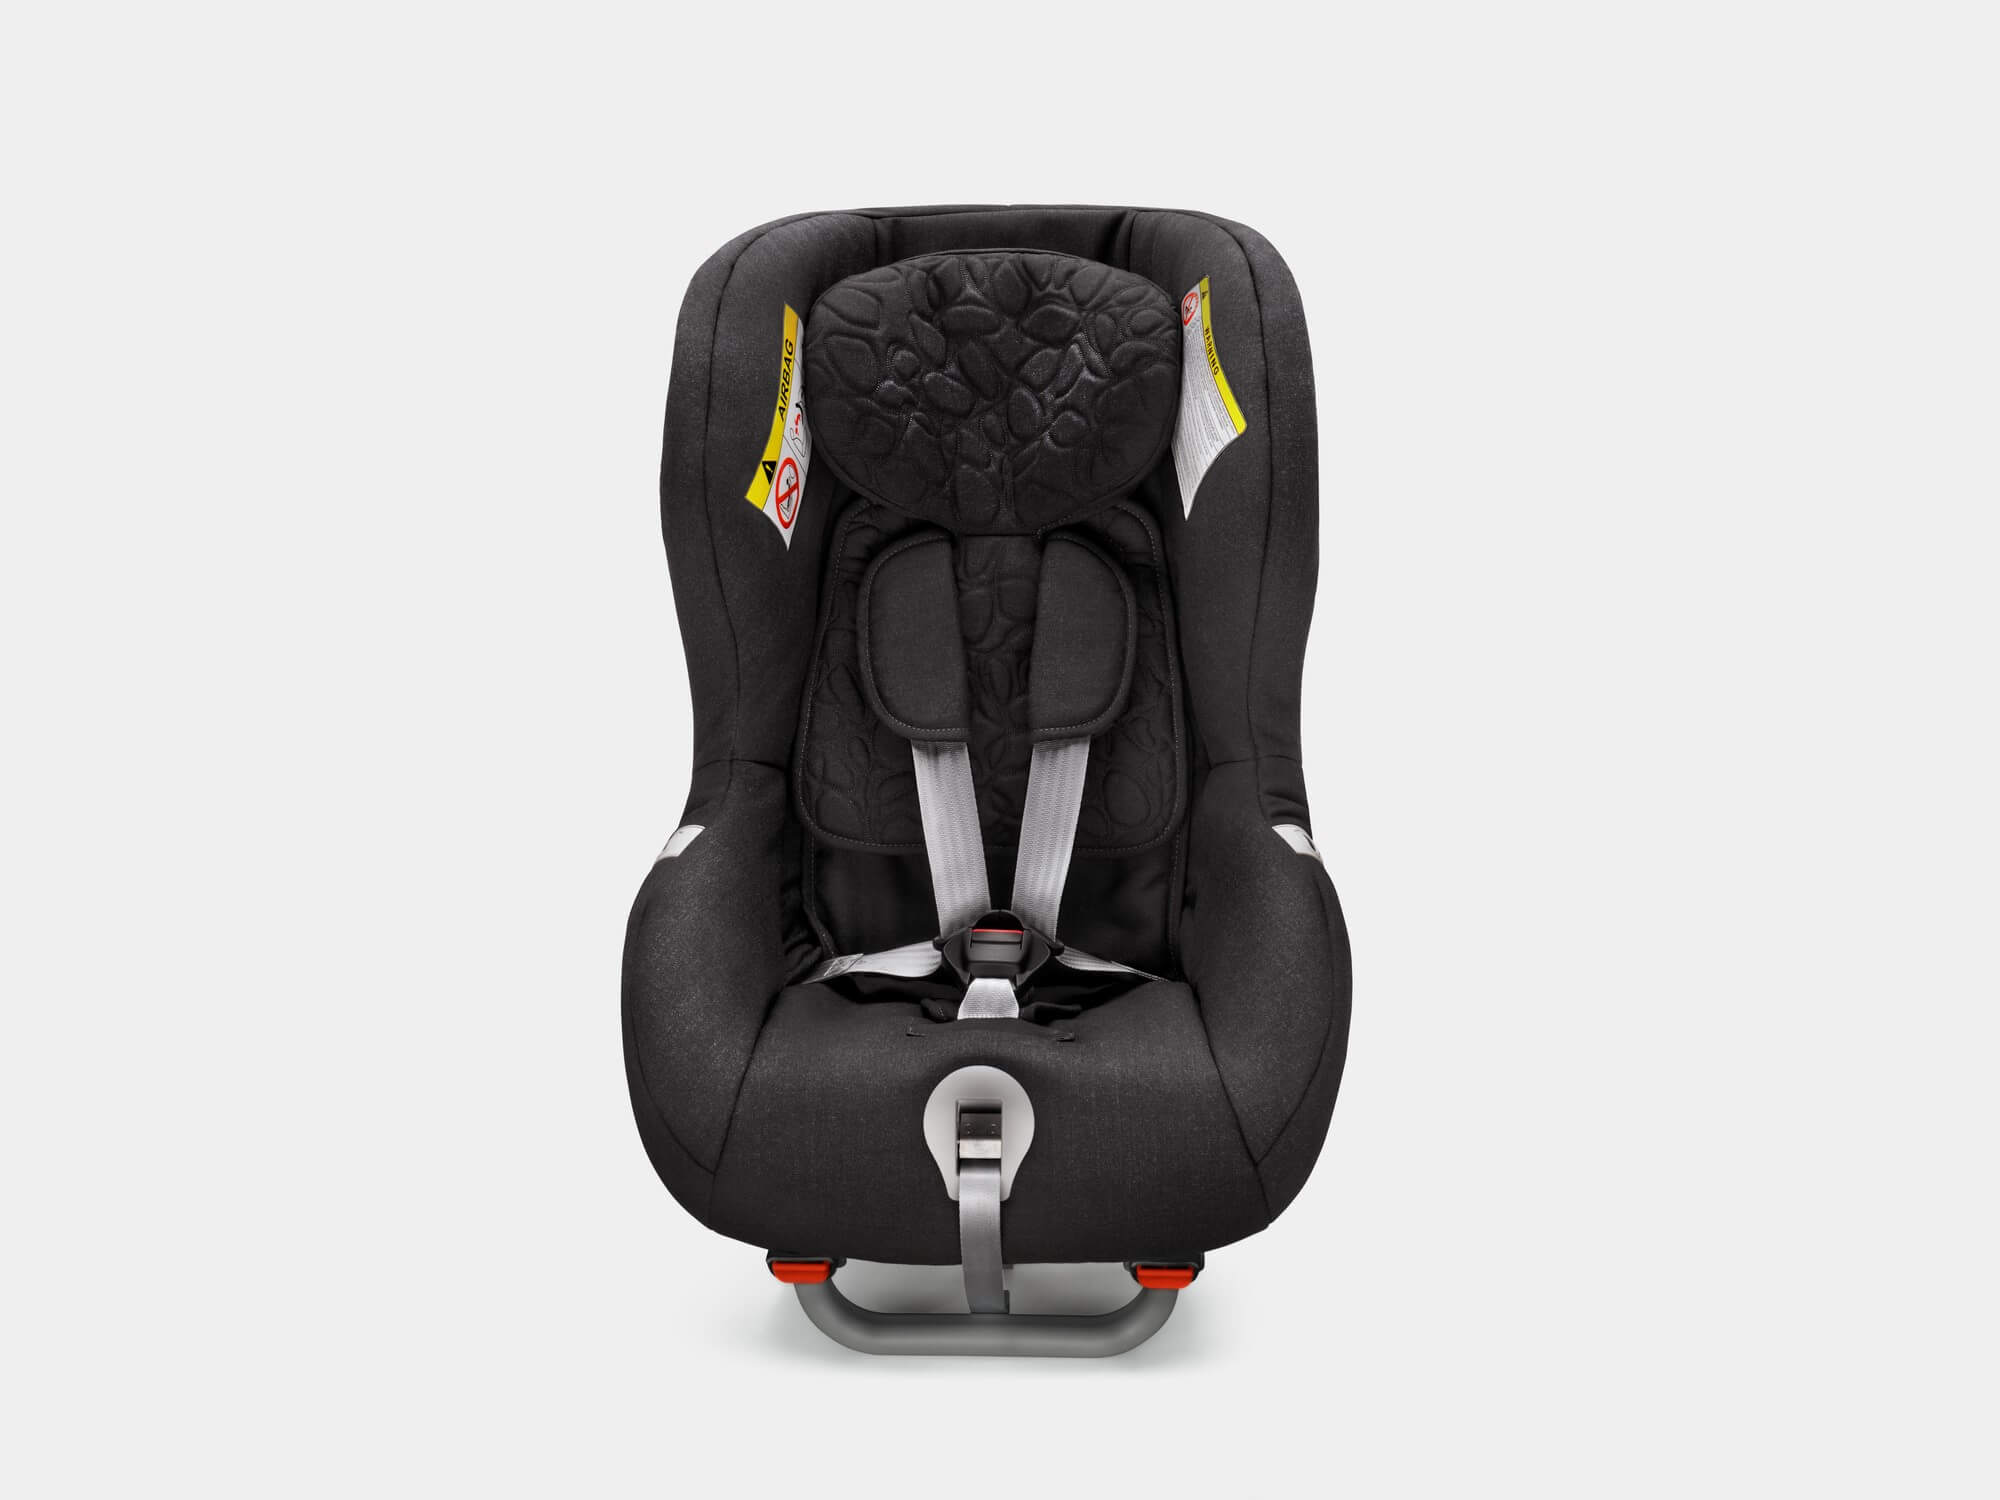 Bezpečnostní sedačka Volvo orientovaná proti směru jízdy pro děti od 9 měsíců do 6 let (9–25 kg).